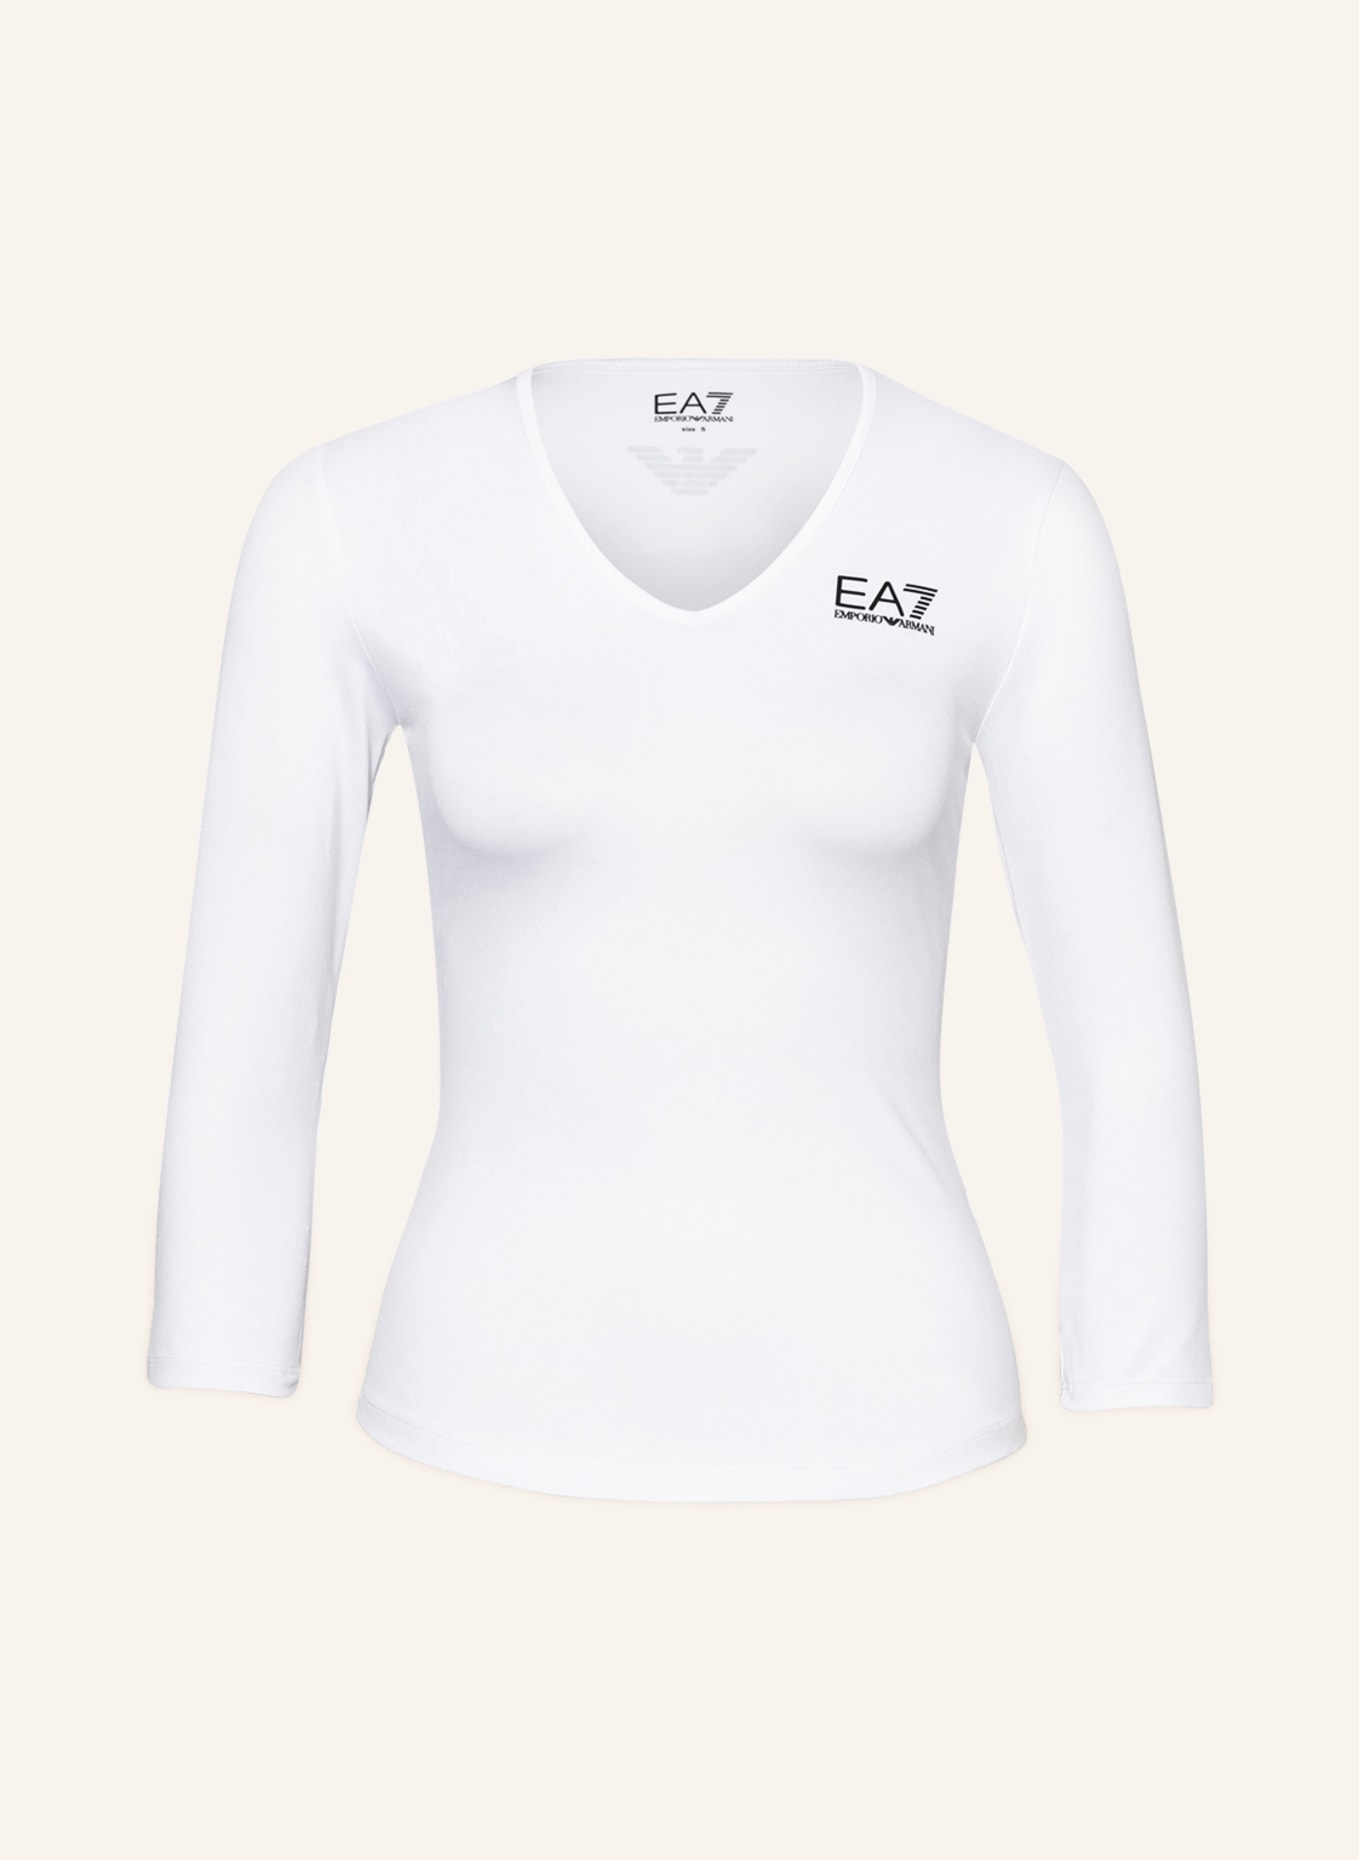 EA7 EMPORIO ARMANI Long sleeve shirt, Color: WHITE (Image 1)